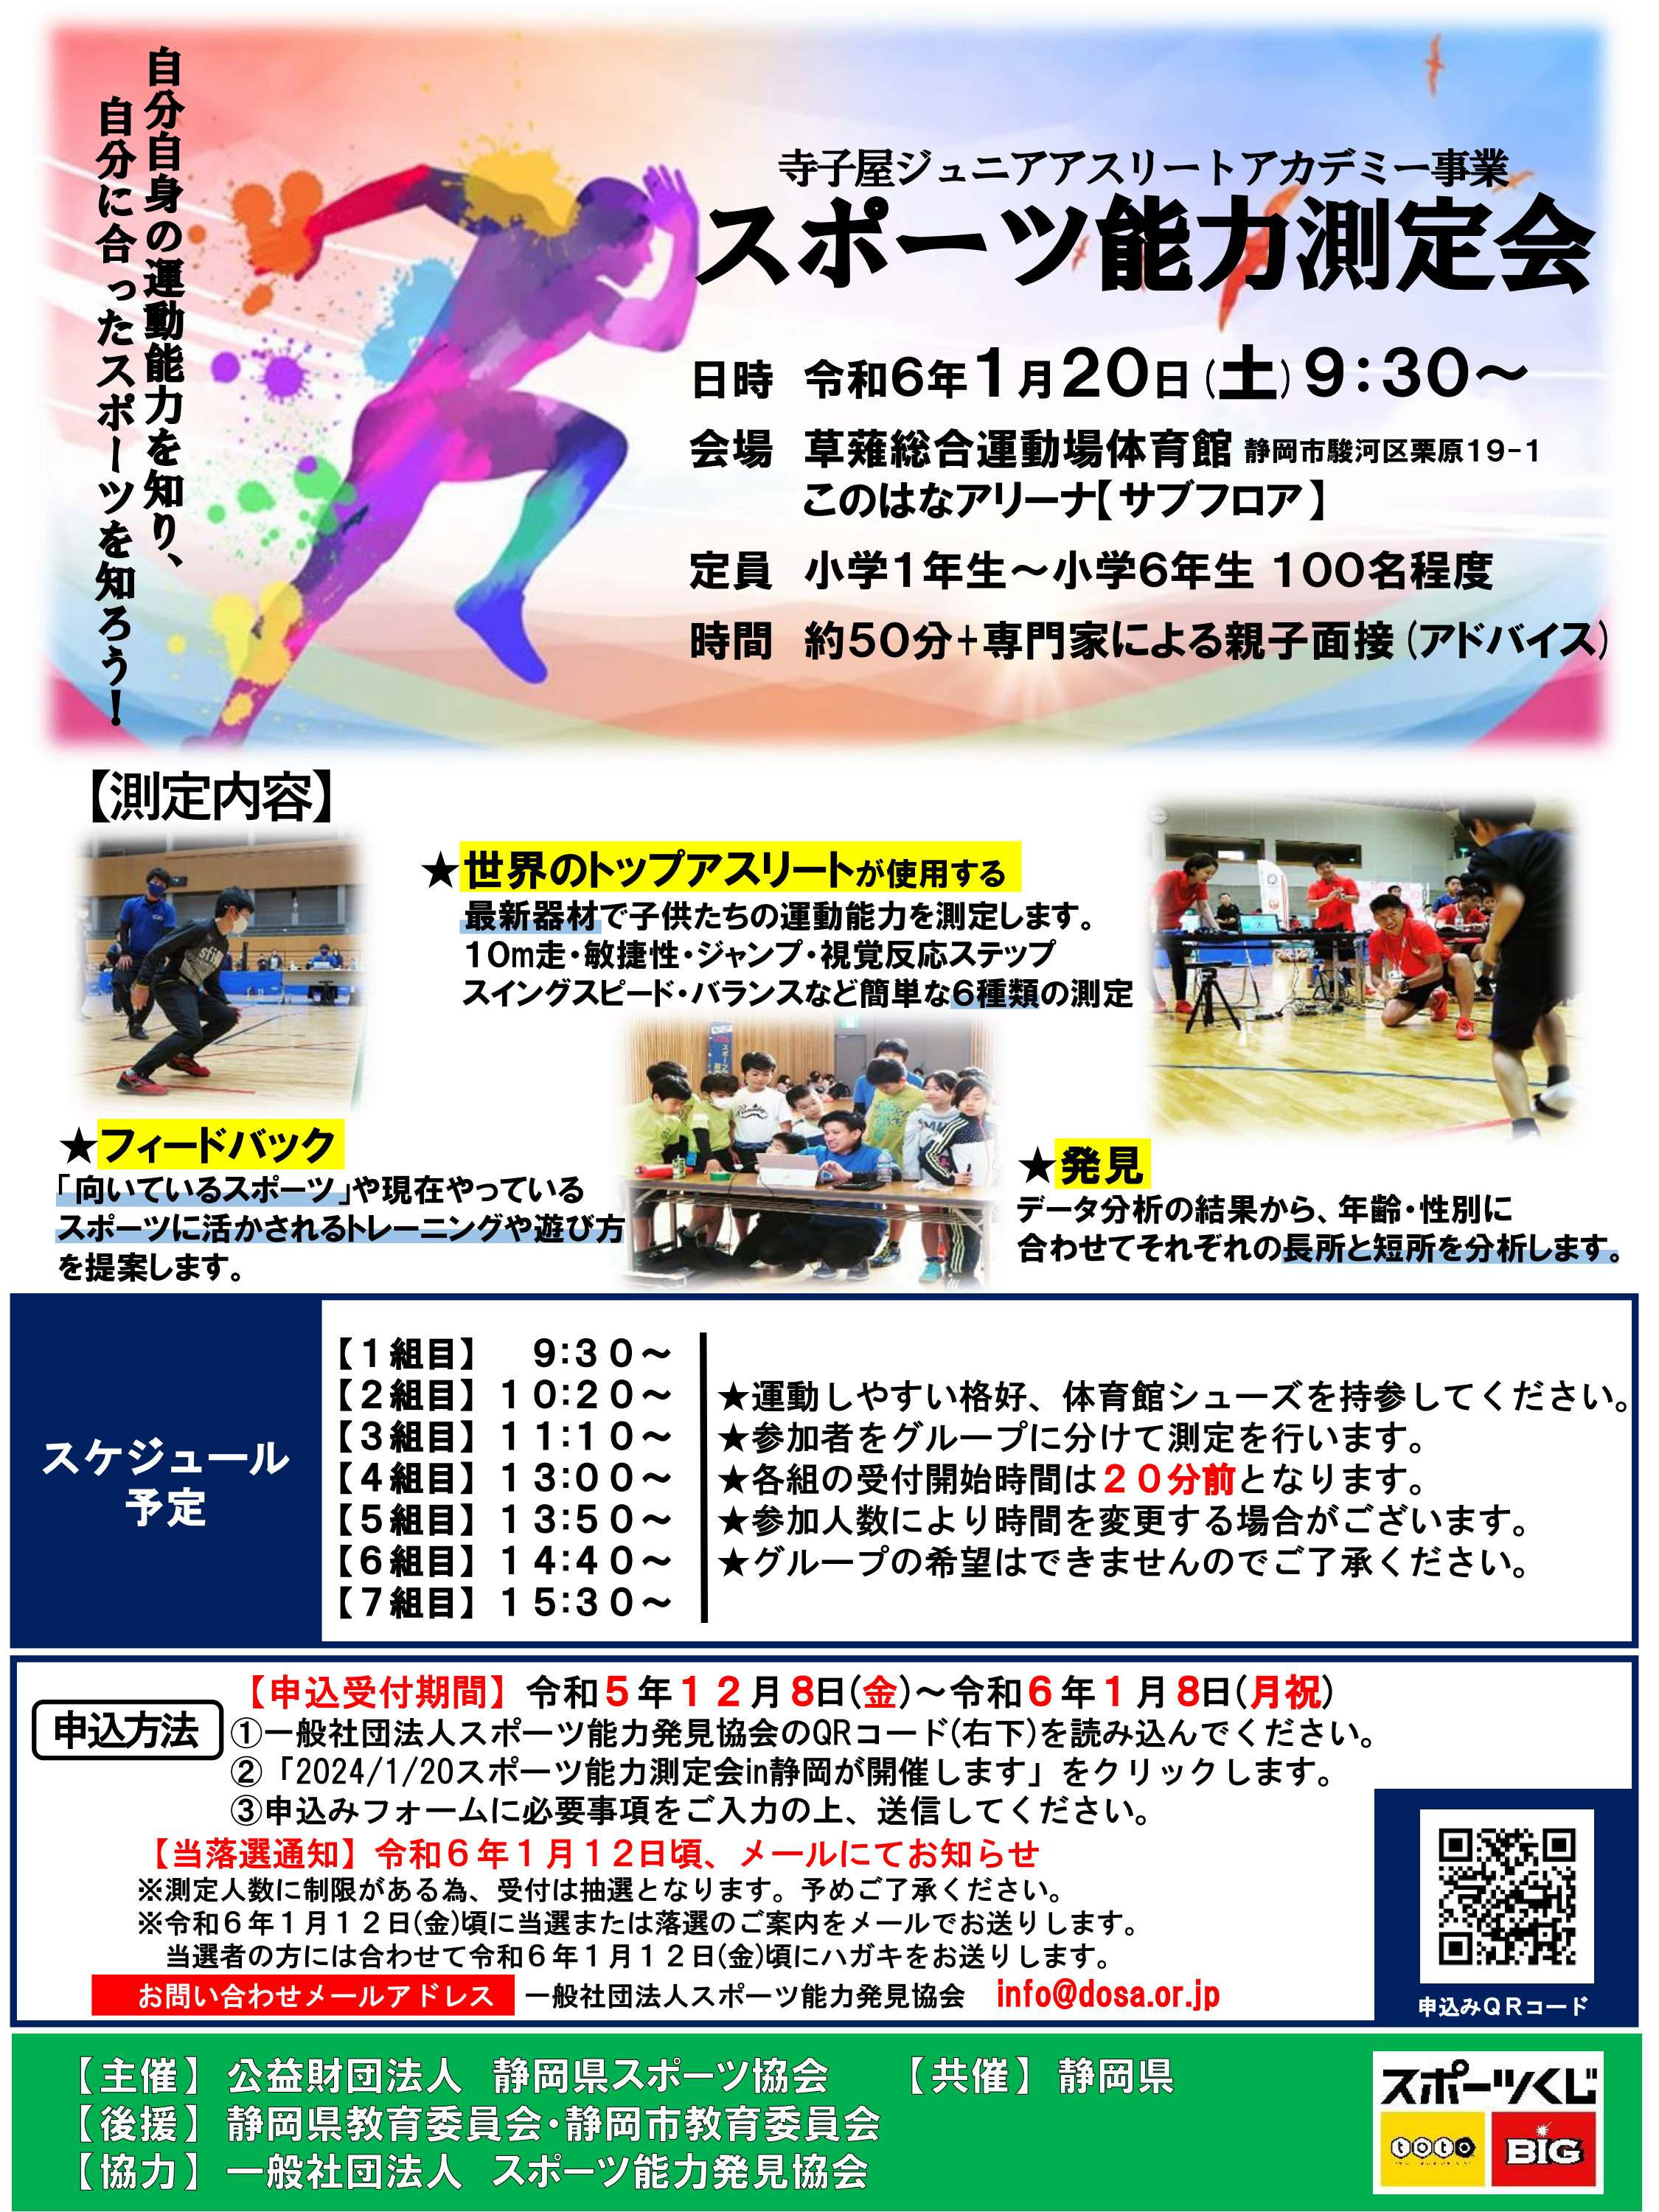 2024/1/20 寺小屋ジュニアアスリートアカデミー事業 スポーツ能力測定会を開催します。